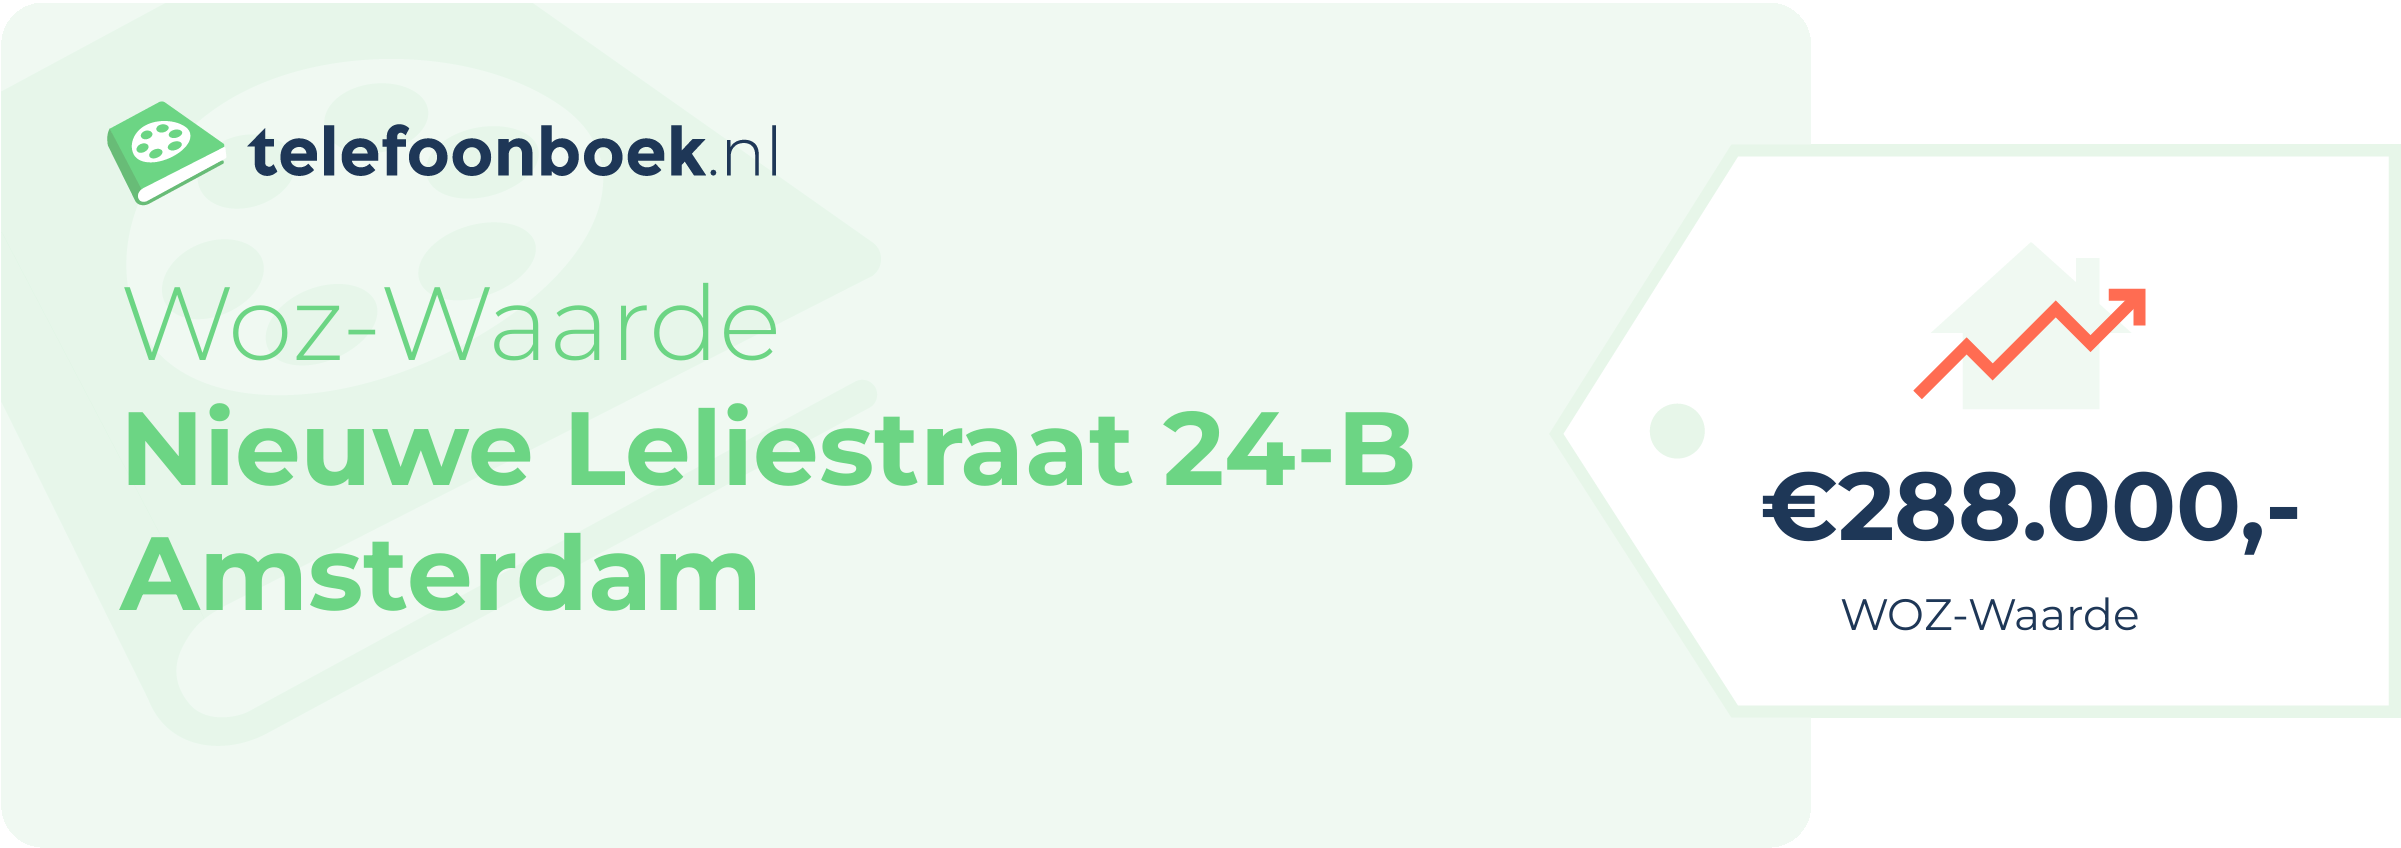 WOZ-waarde Nieuwe Leliestraat 24-B Amsterdam